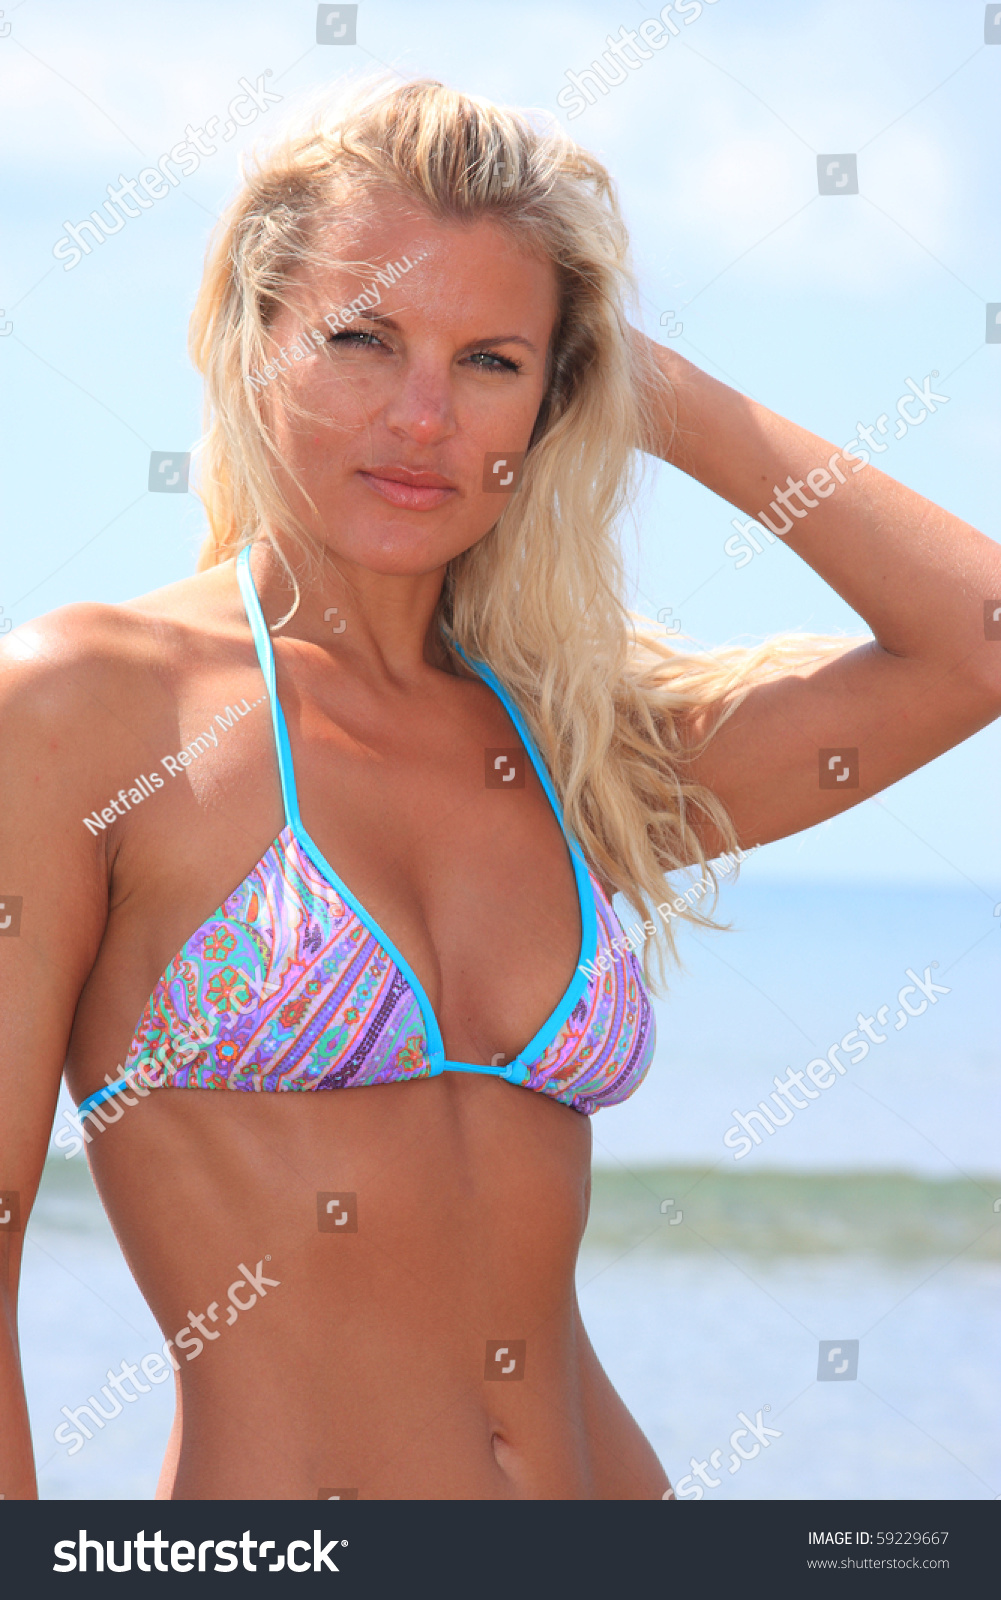 single russian girl in bikini free xxx photo